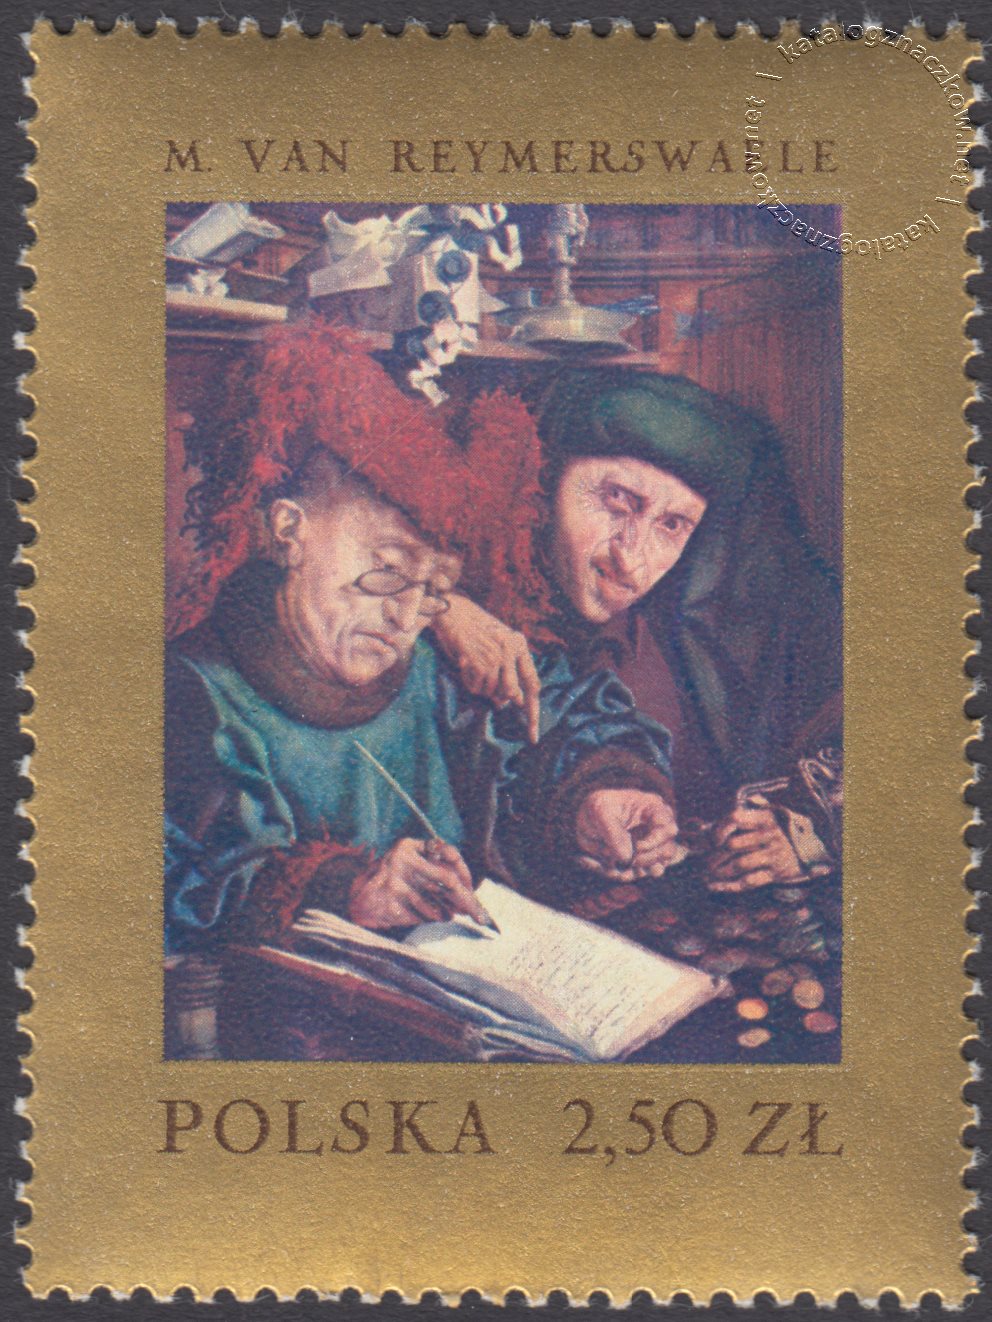 Malarstwo europejskie w muzeach polskich znaczek nr 1665